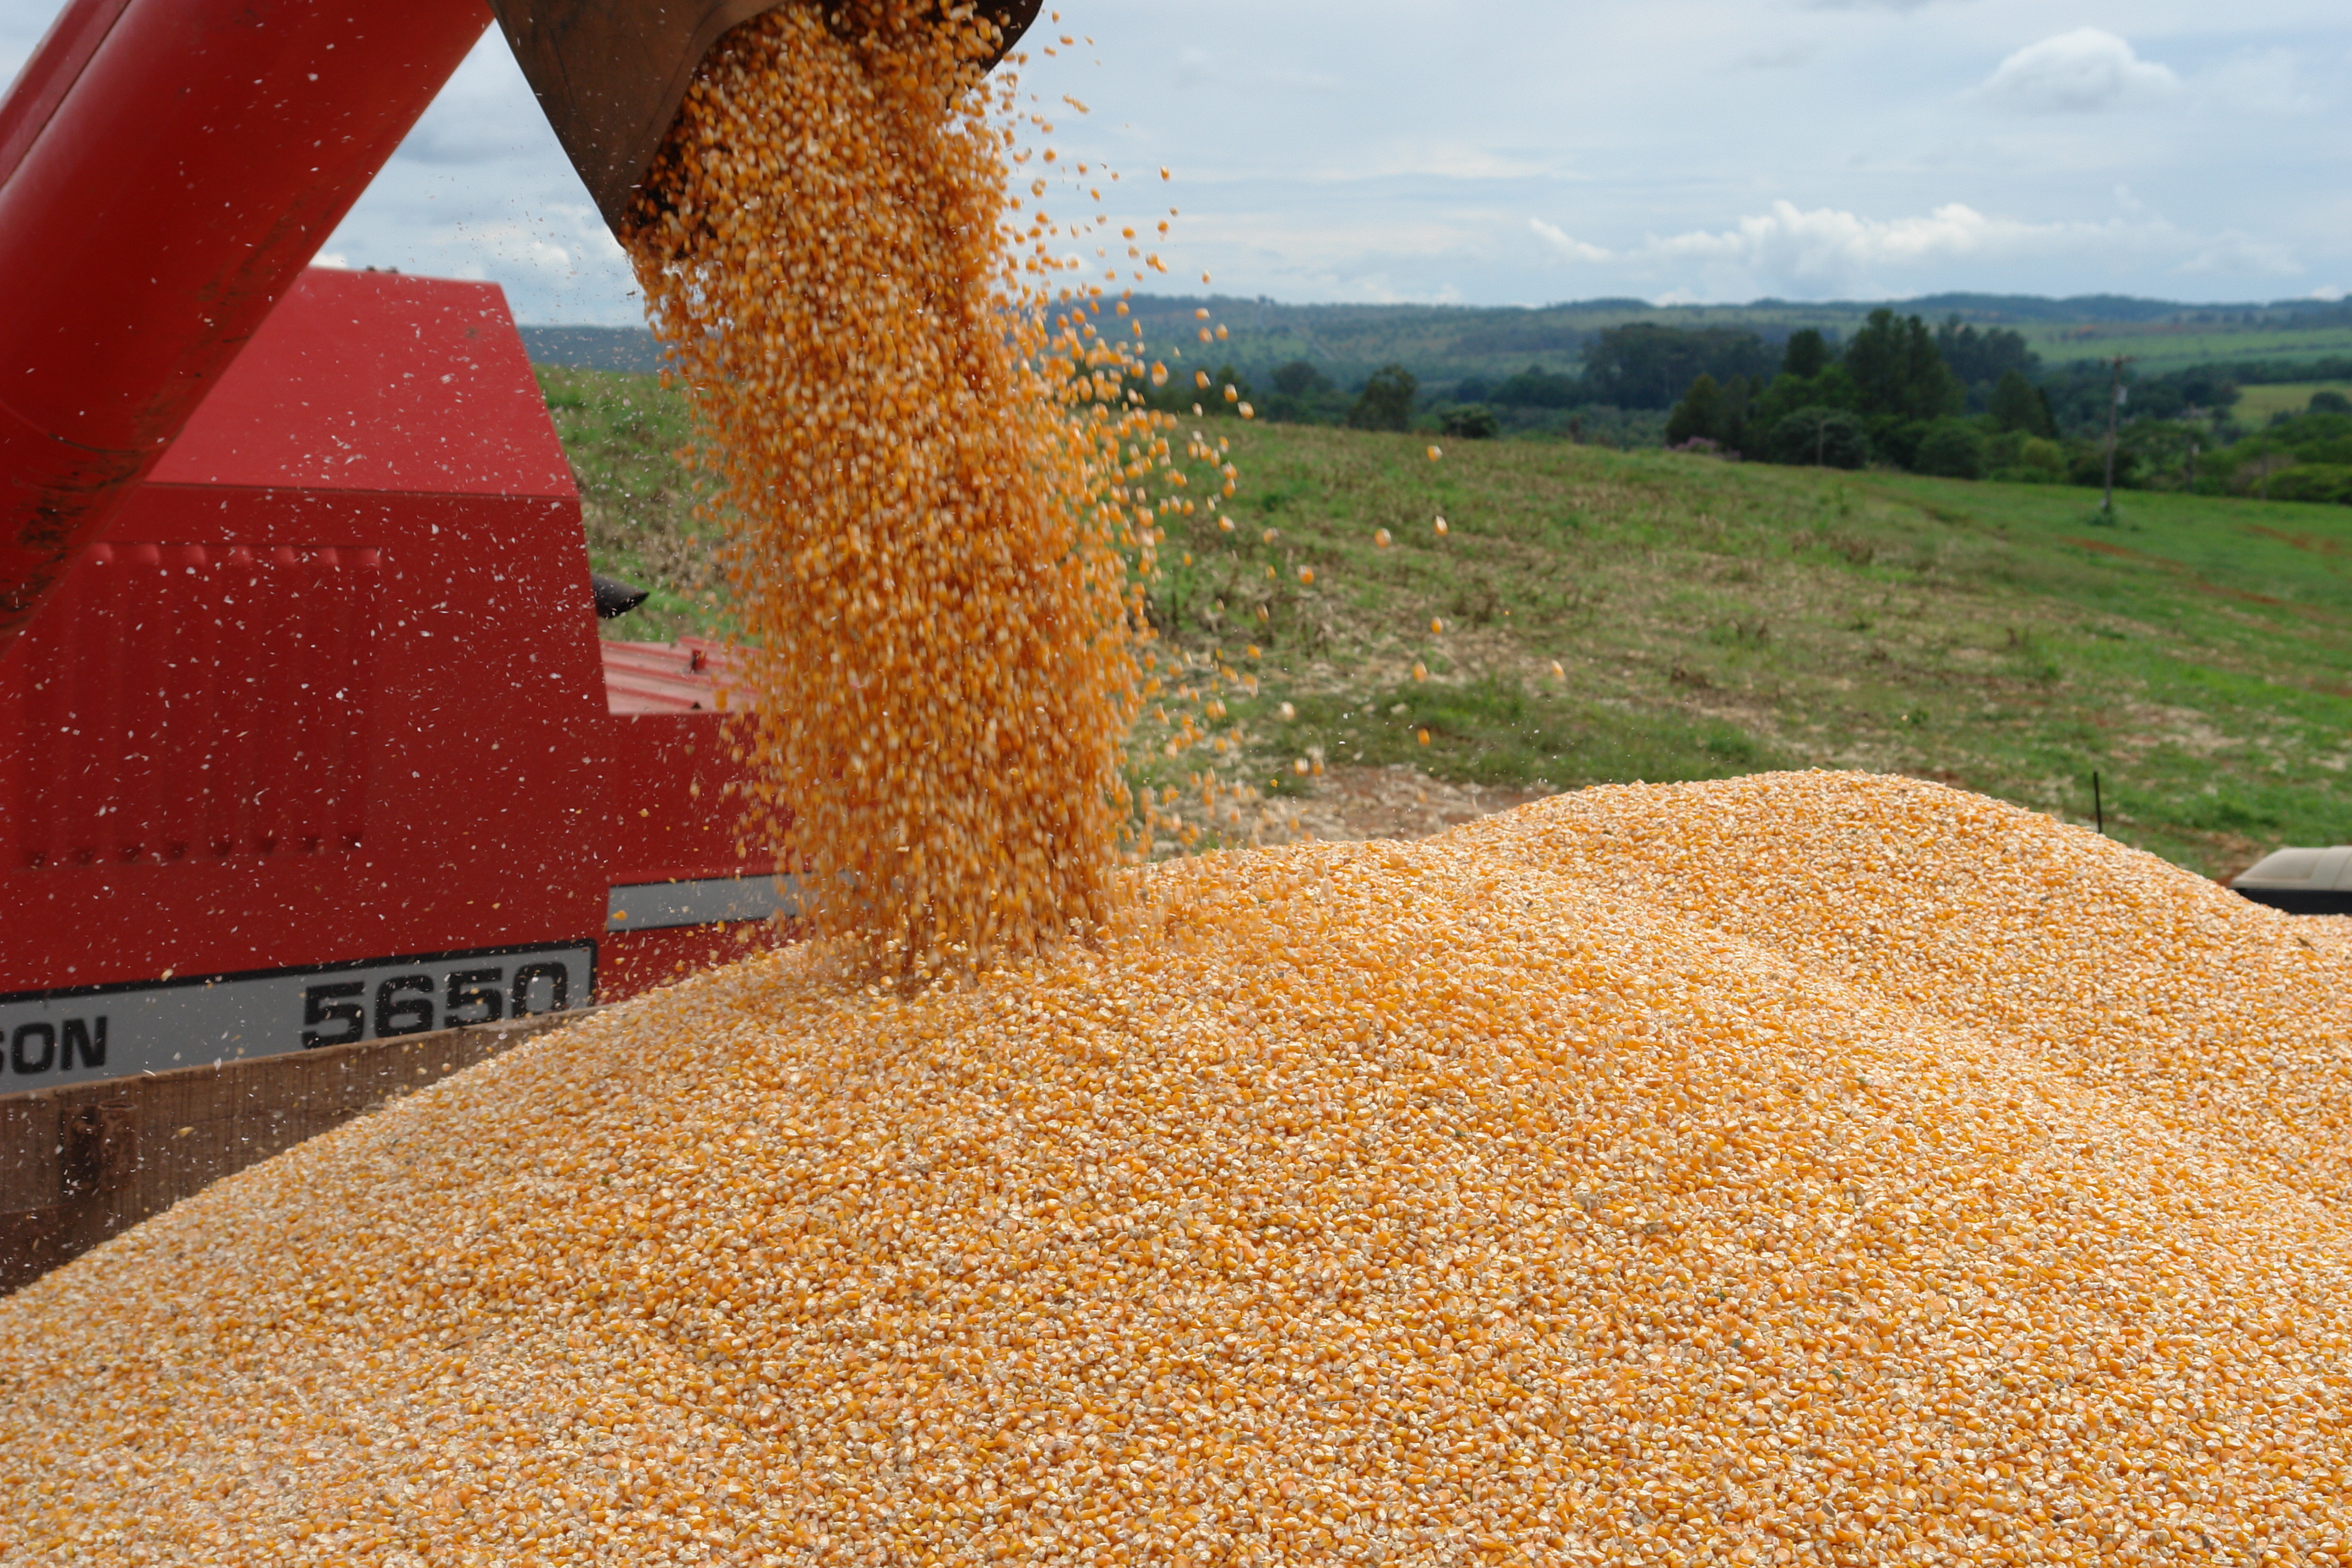  Produção de grãos deve crescer 10% no Paraná